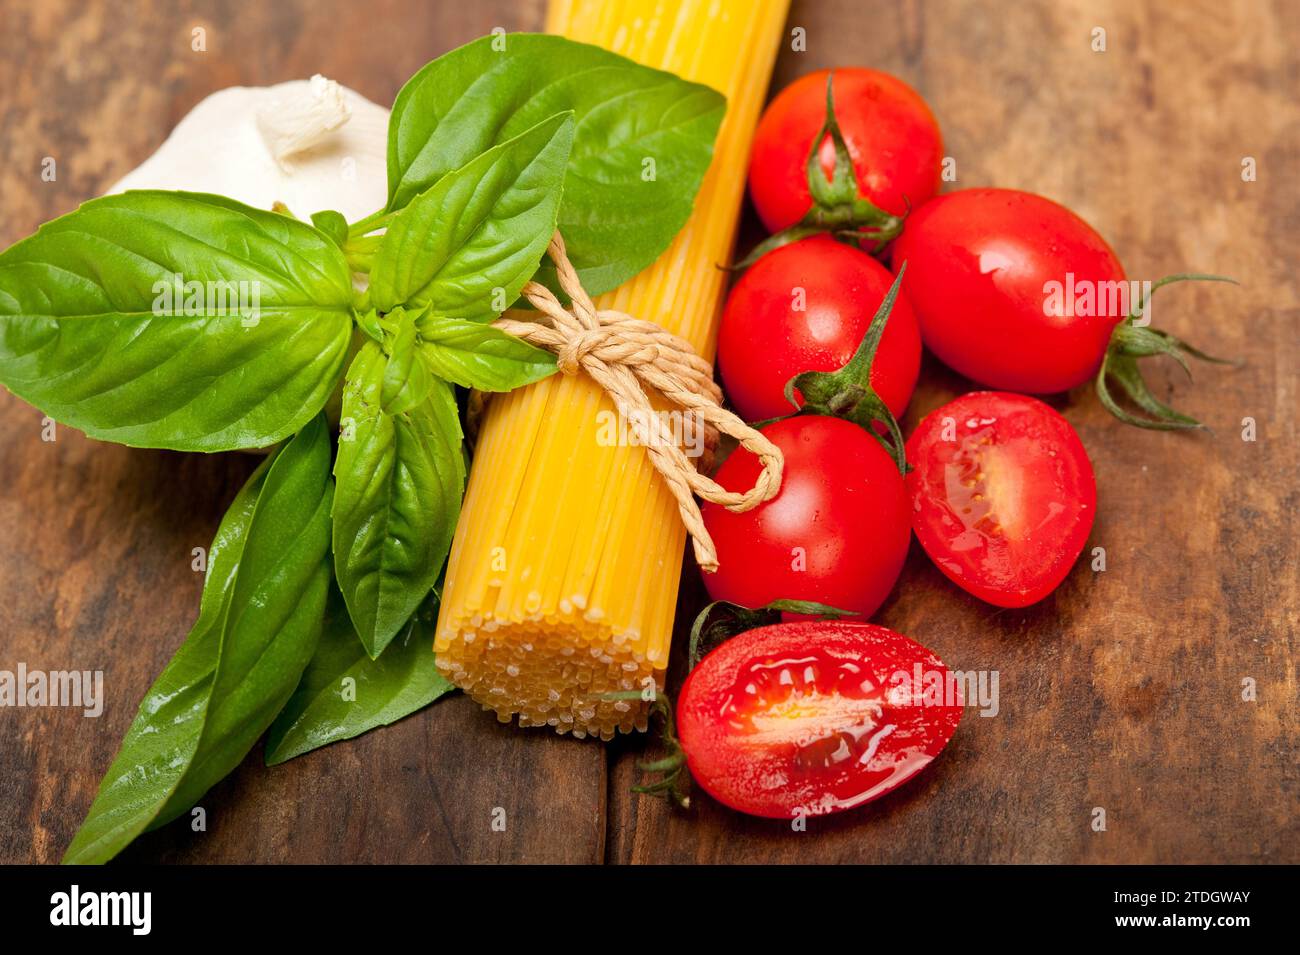 Rohe Zutaten Spaghetti Pasta Tomate und Basilikum Grundlagen der italienischen Küche, Lebensmittelfotografie Stockfoto